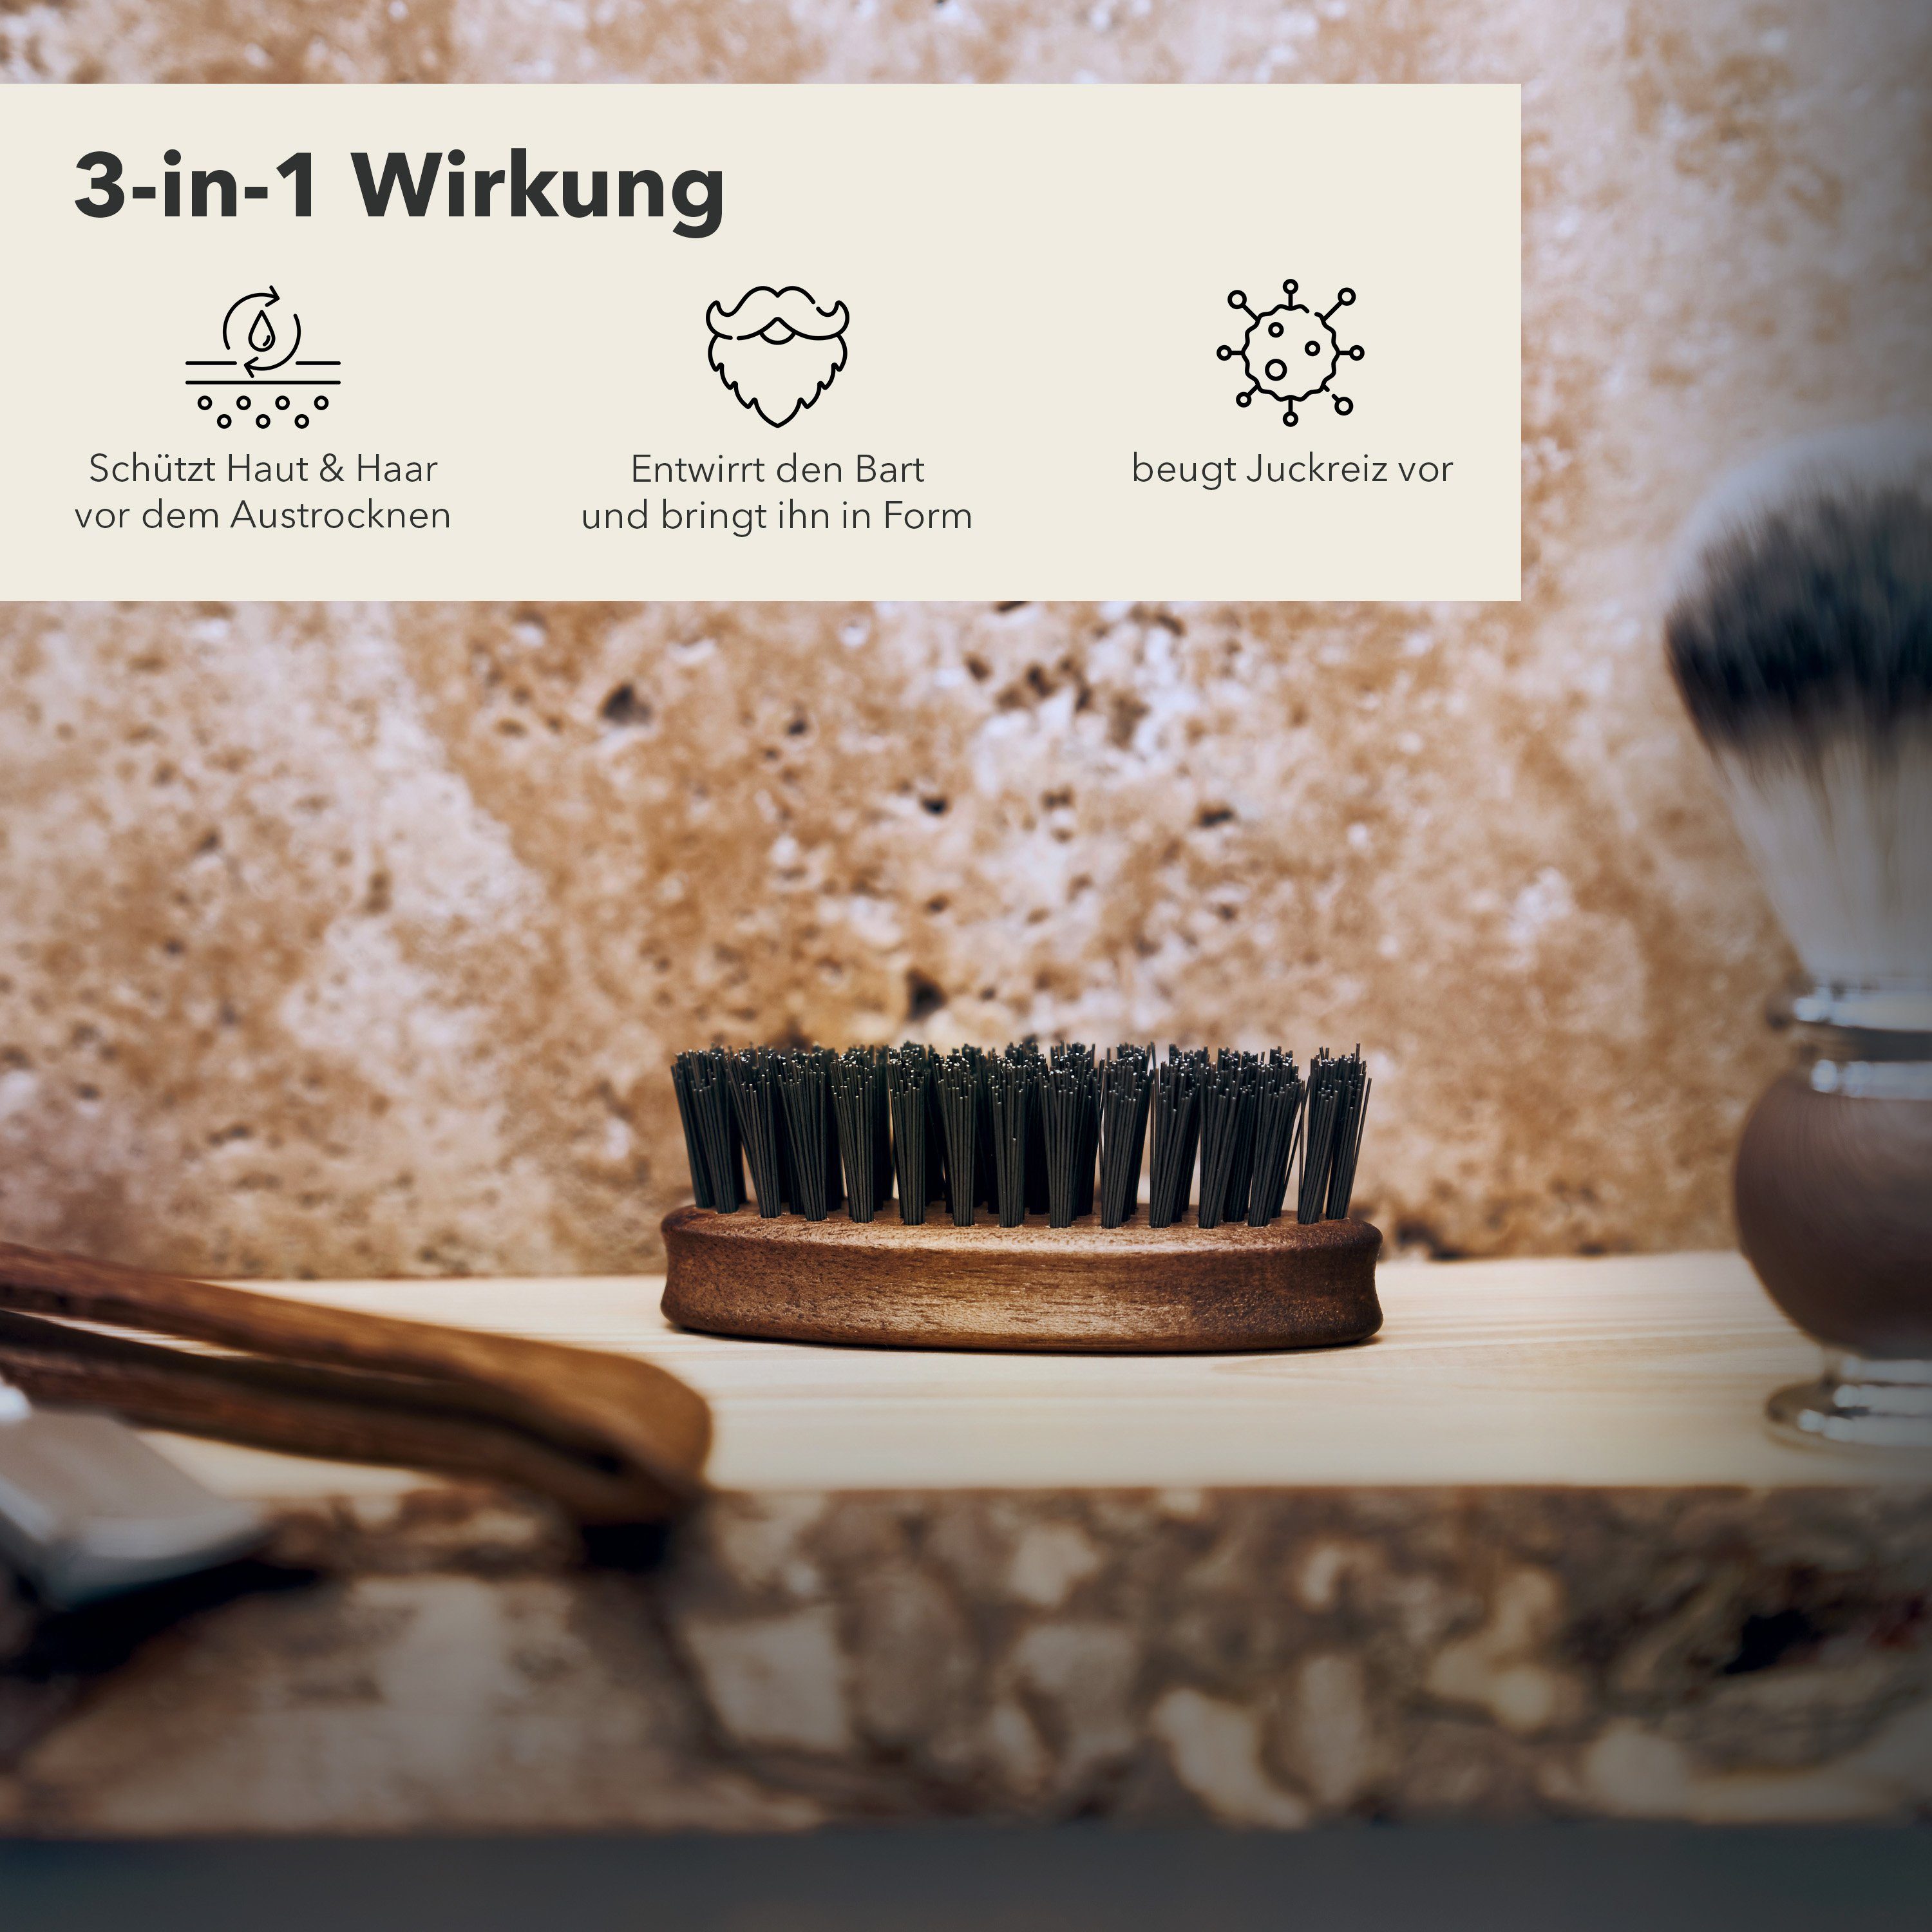 Entwirrt bringt ihn und Germany - Bart Störtebekker in in den Bartbürste Made Form